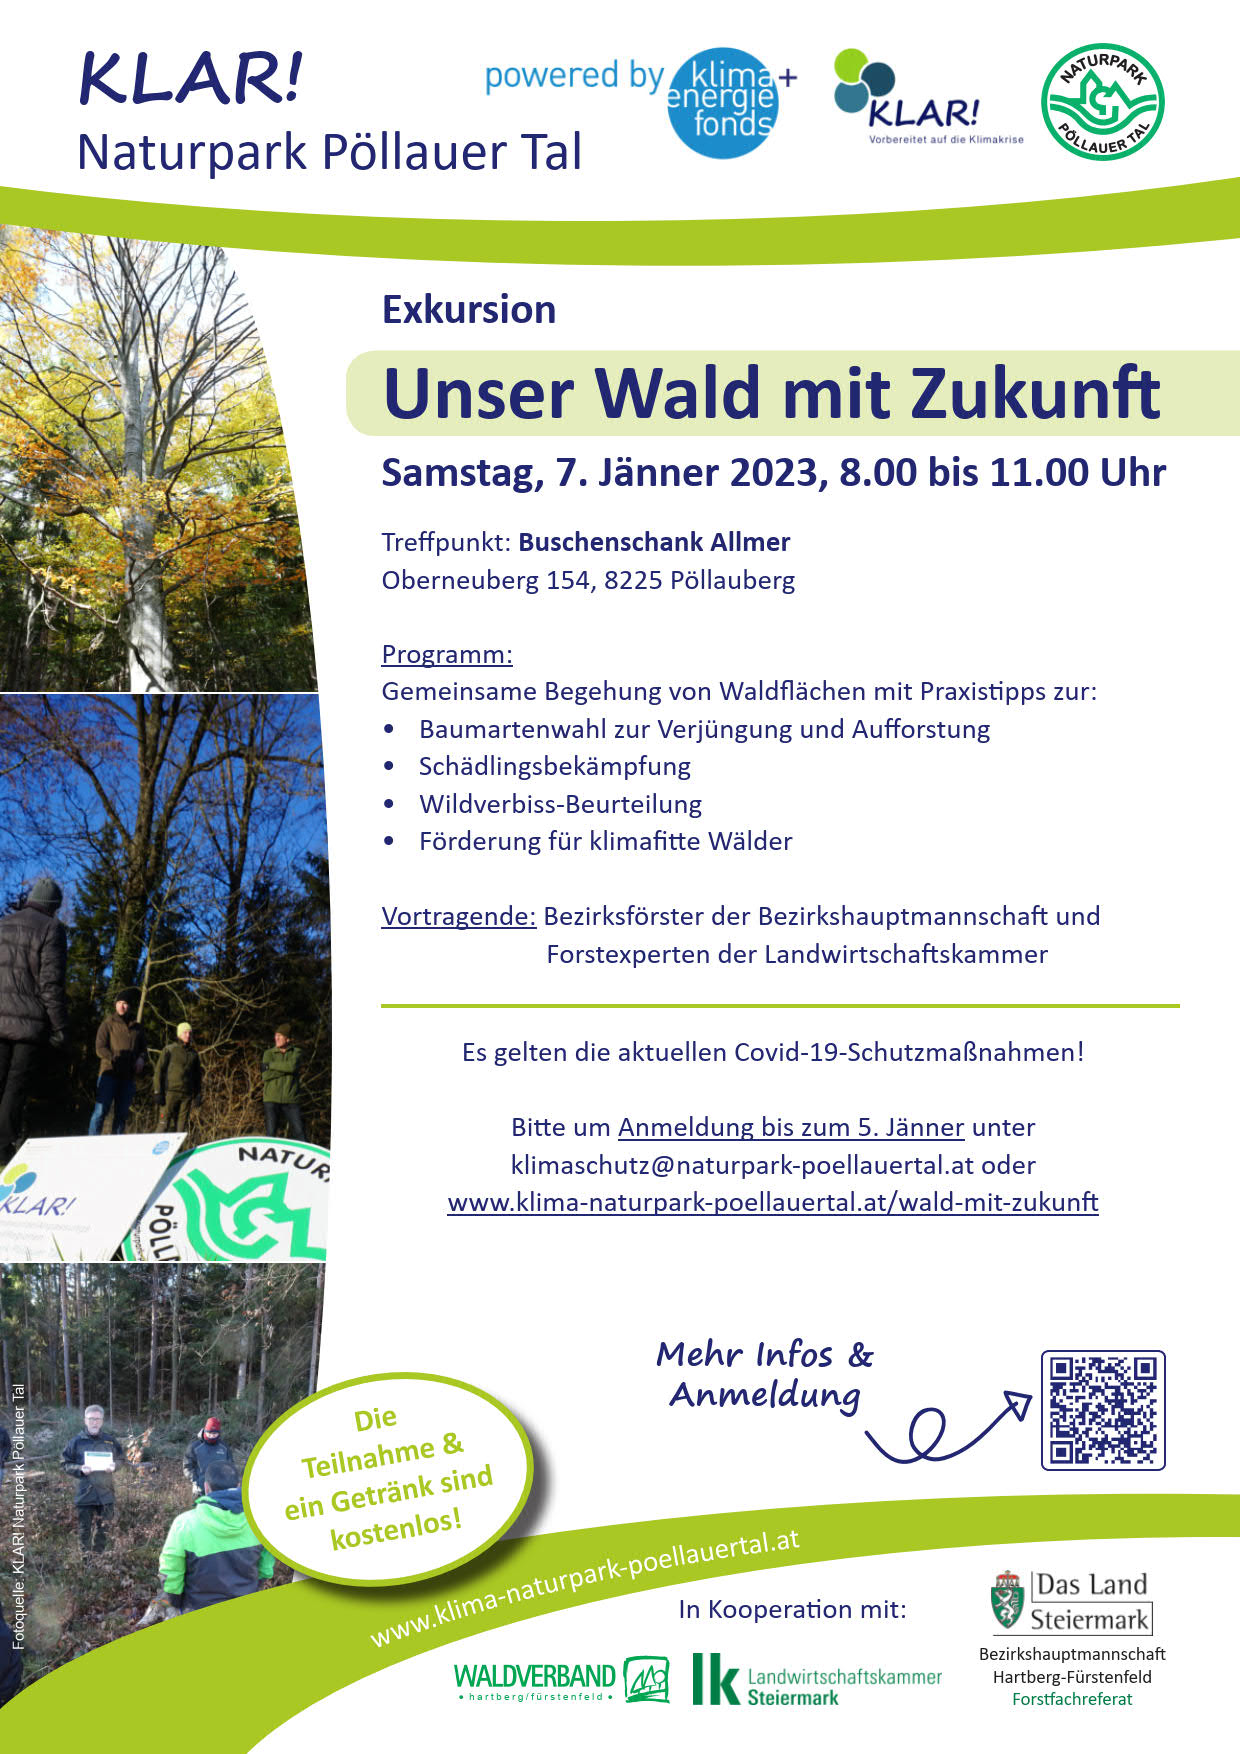 Exkursion-Unser-Wald-mit-Zukunft-2023-01 1